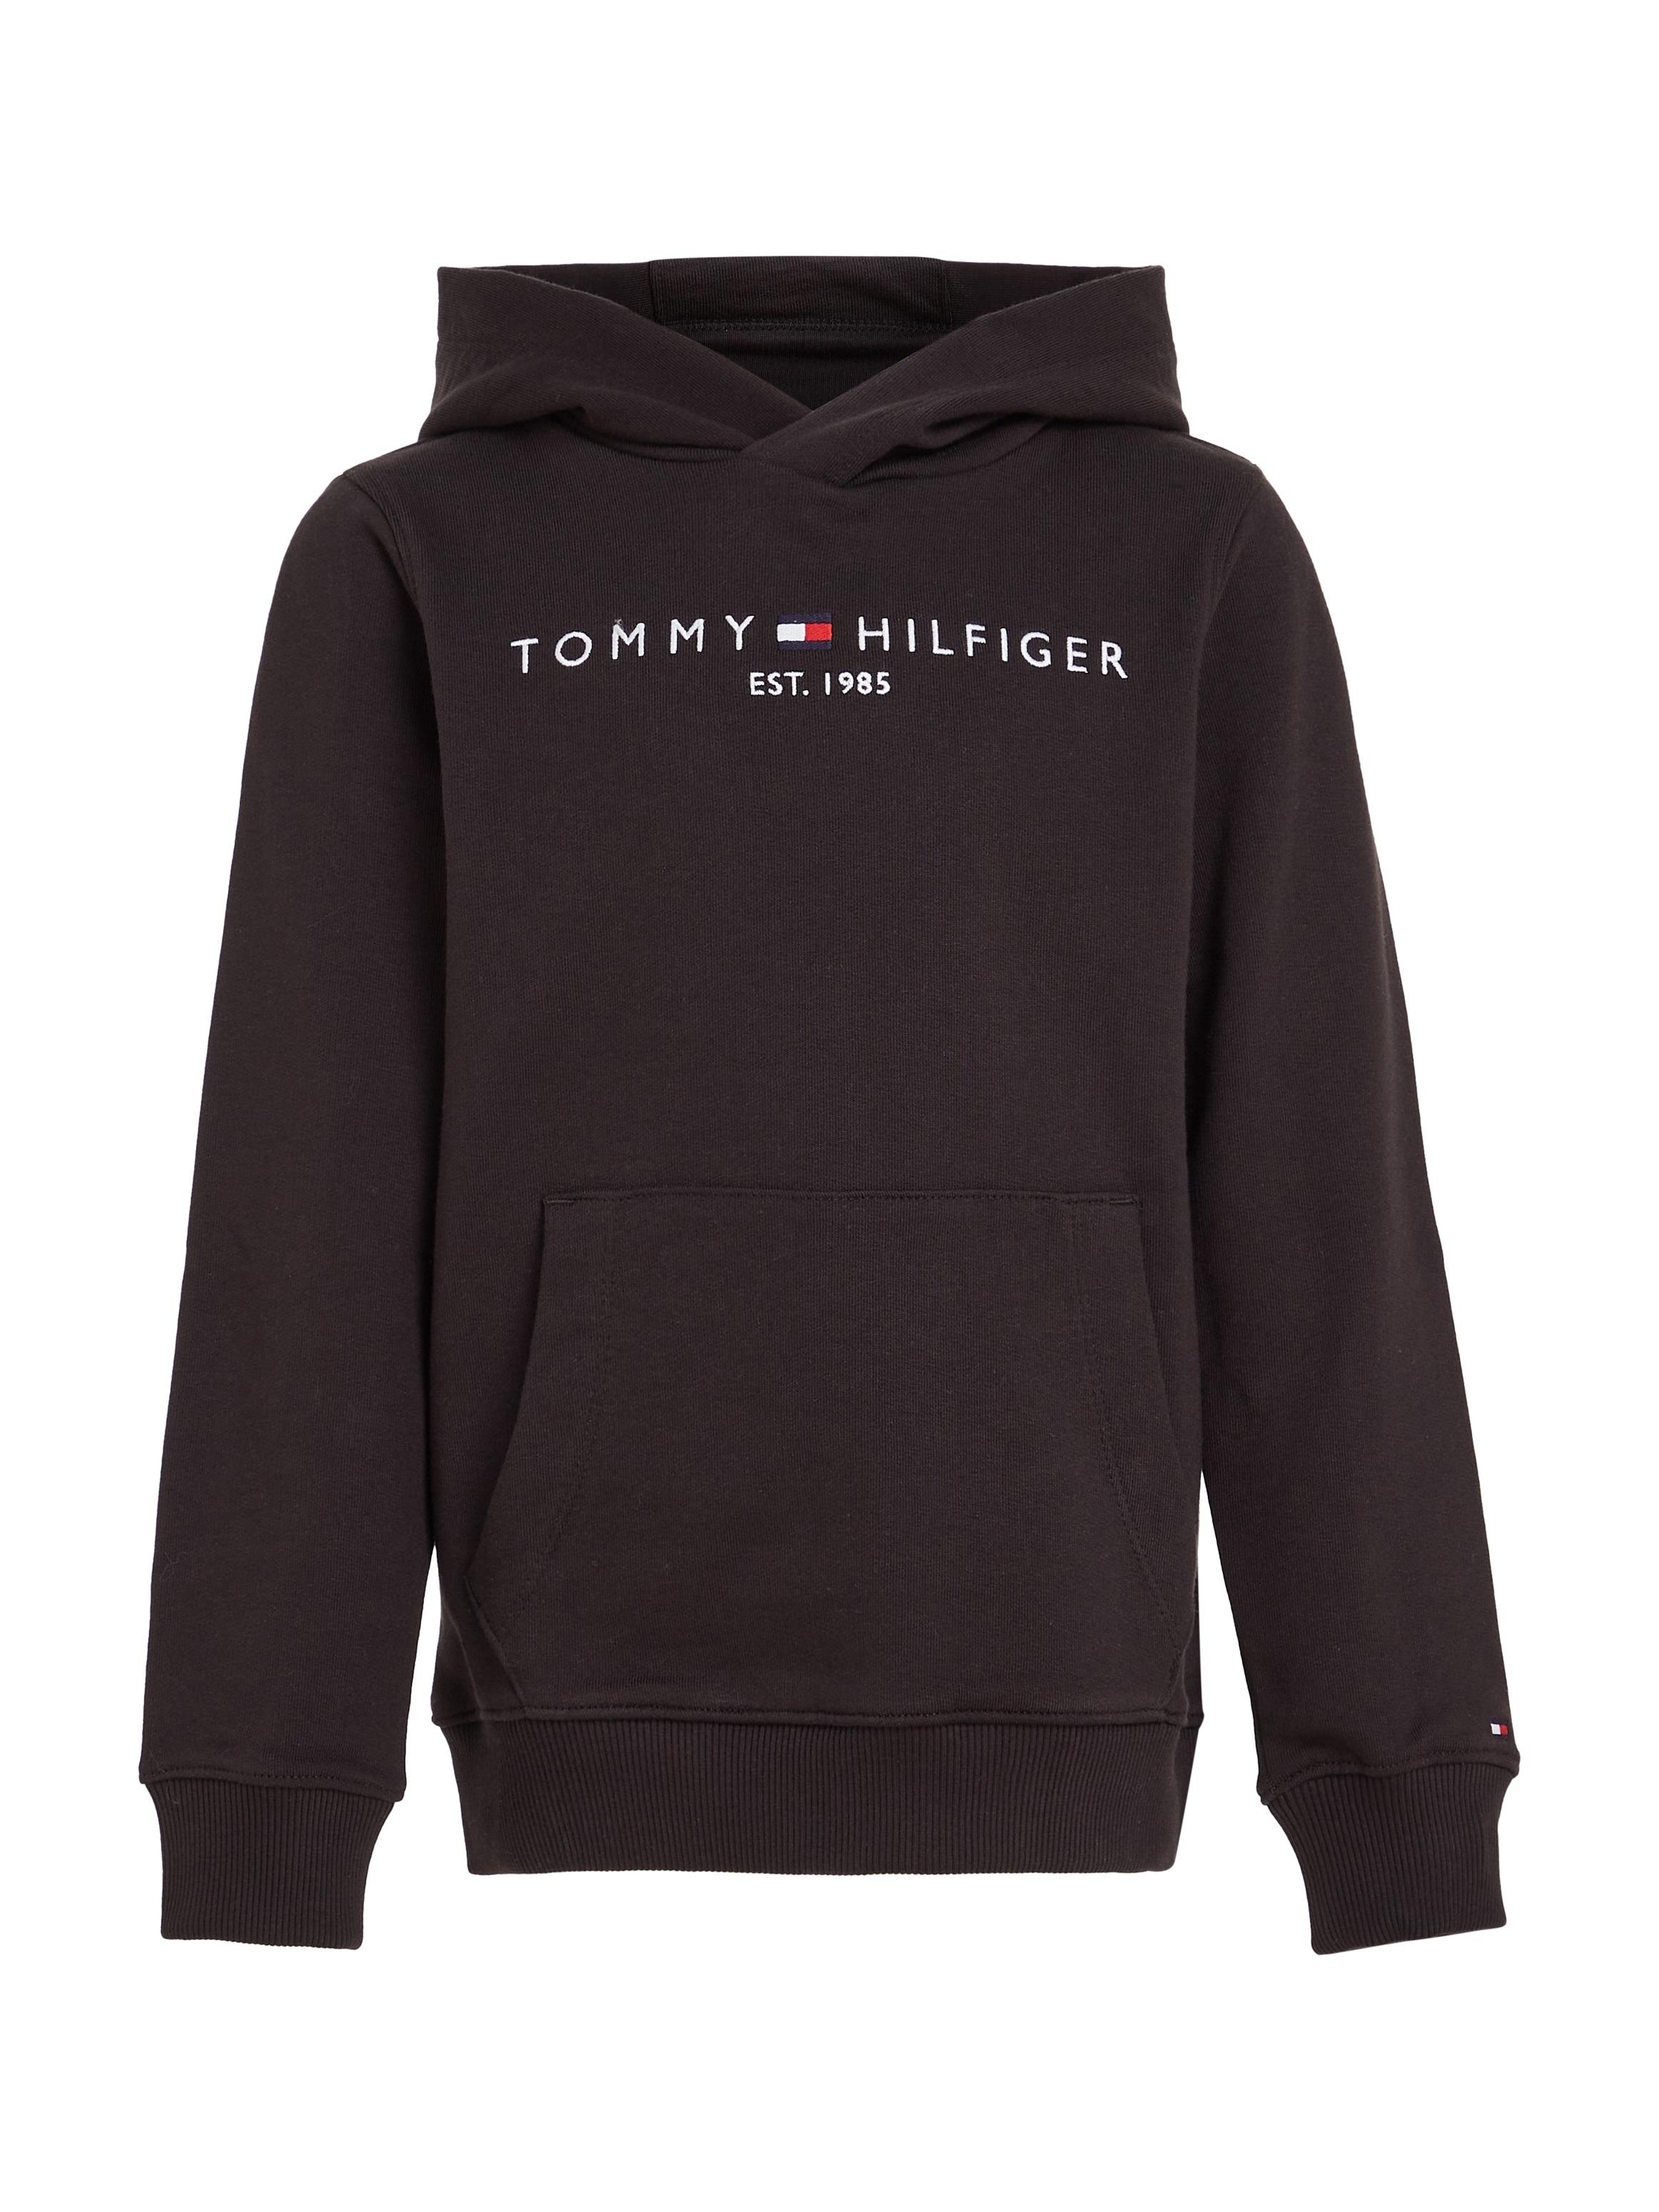 Trendige Tommy Hilfiger Kapuzensweatshirt Kids bestellen Junior Jungen »ESSENTIAL HOODIE«, Mädchen und Kinder MiniMe,für Mindestbestellwert ohne